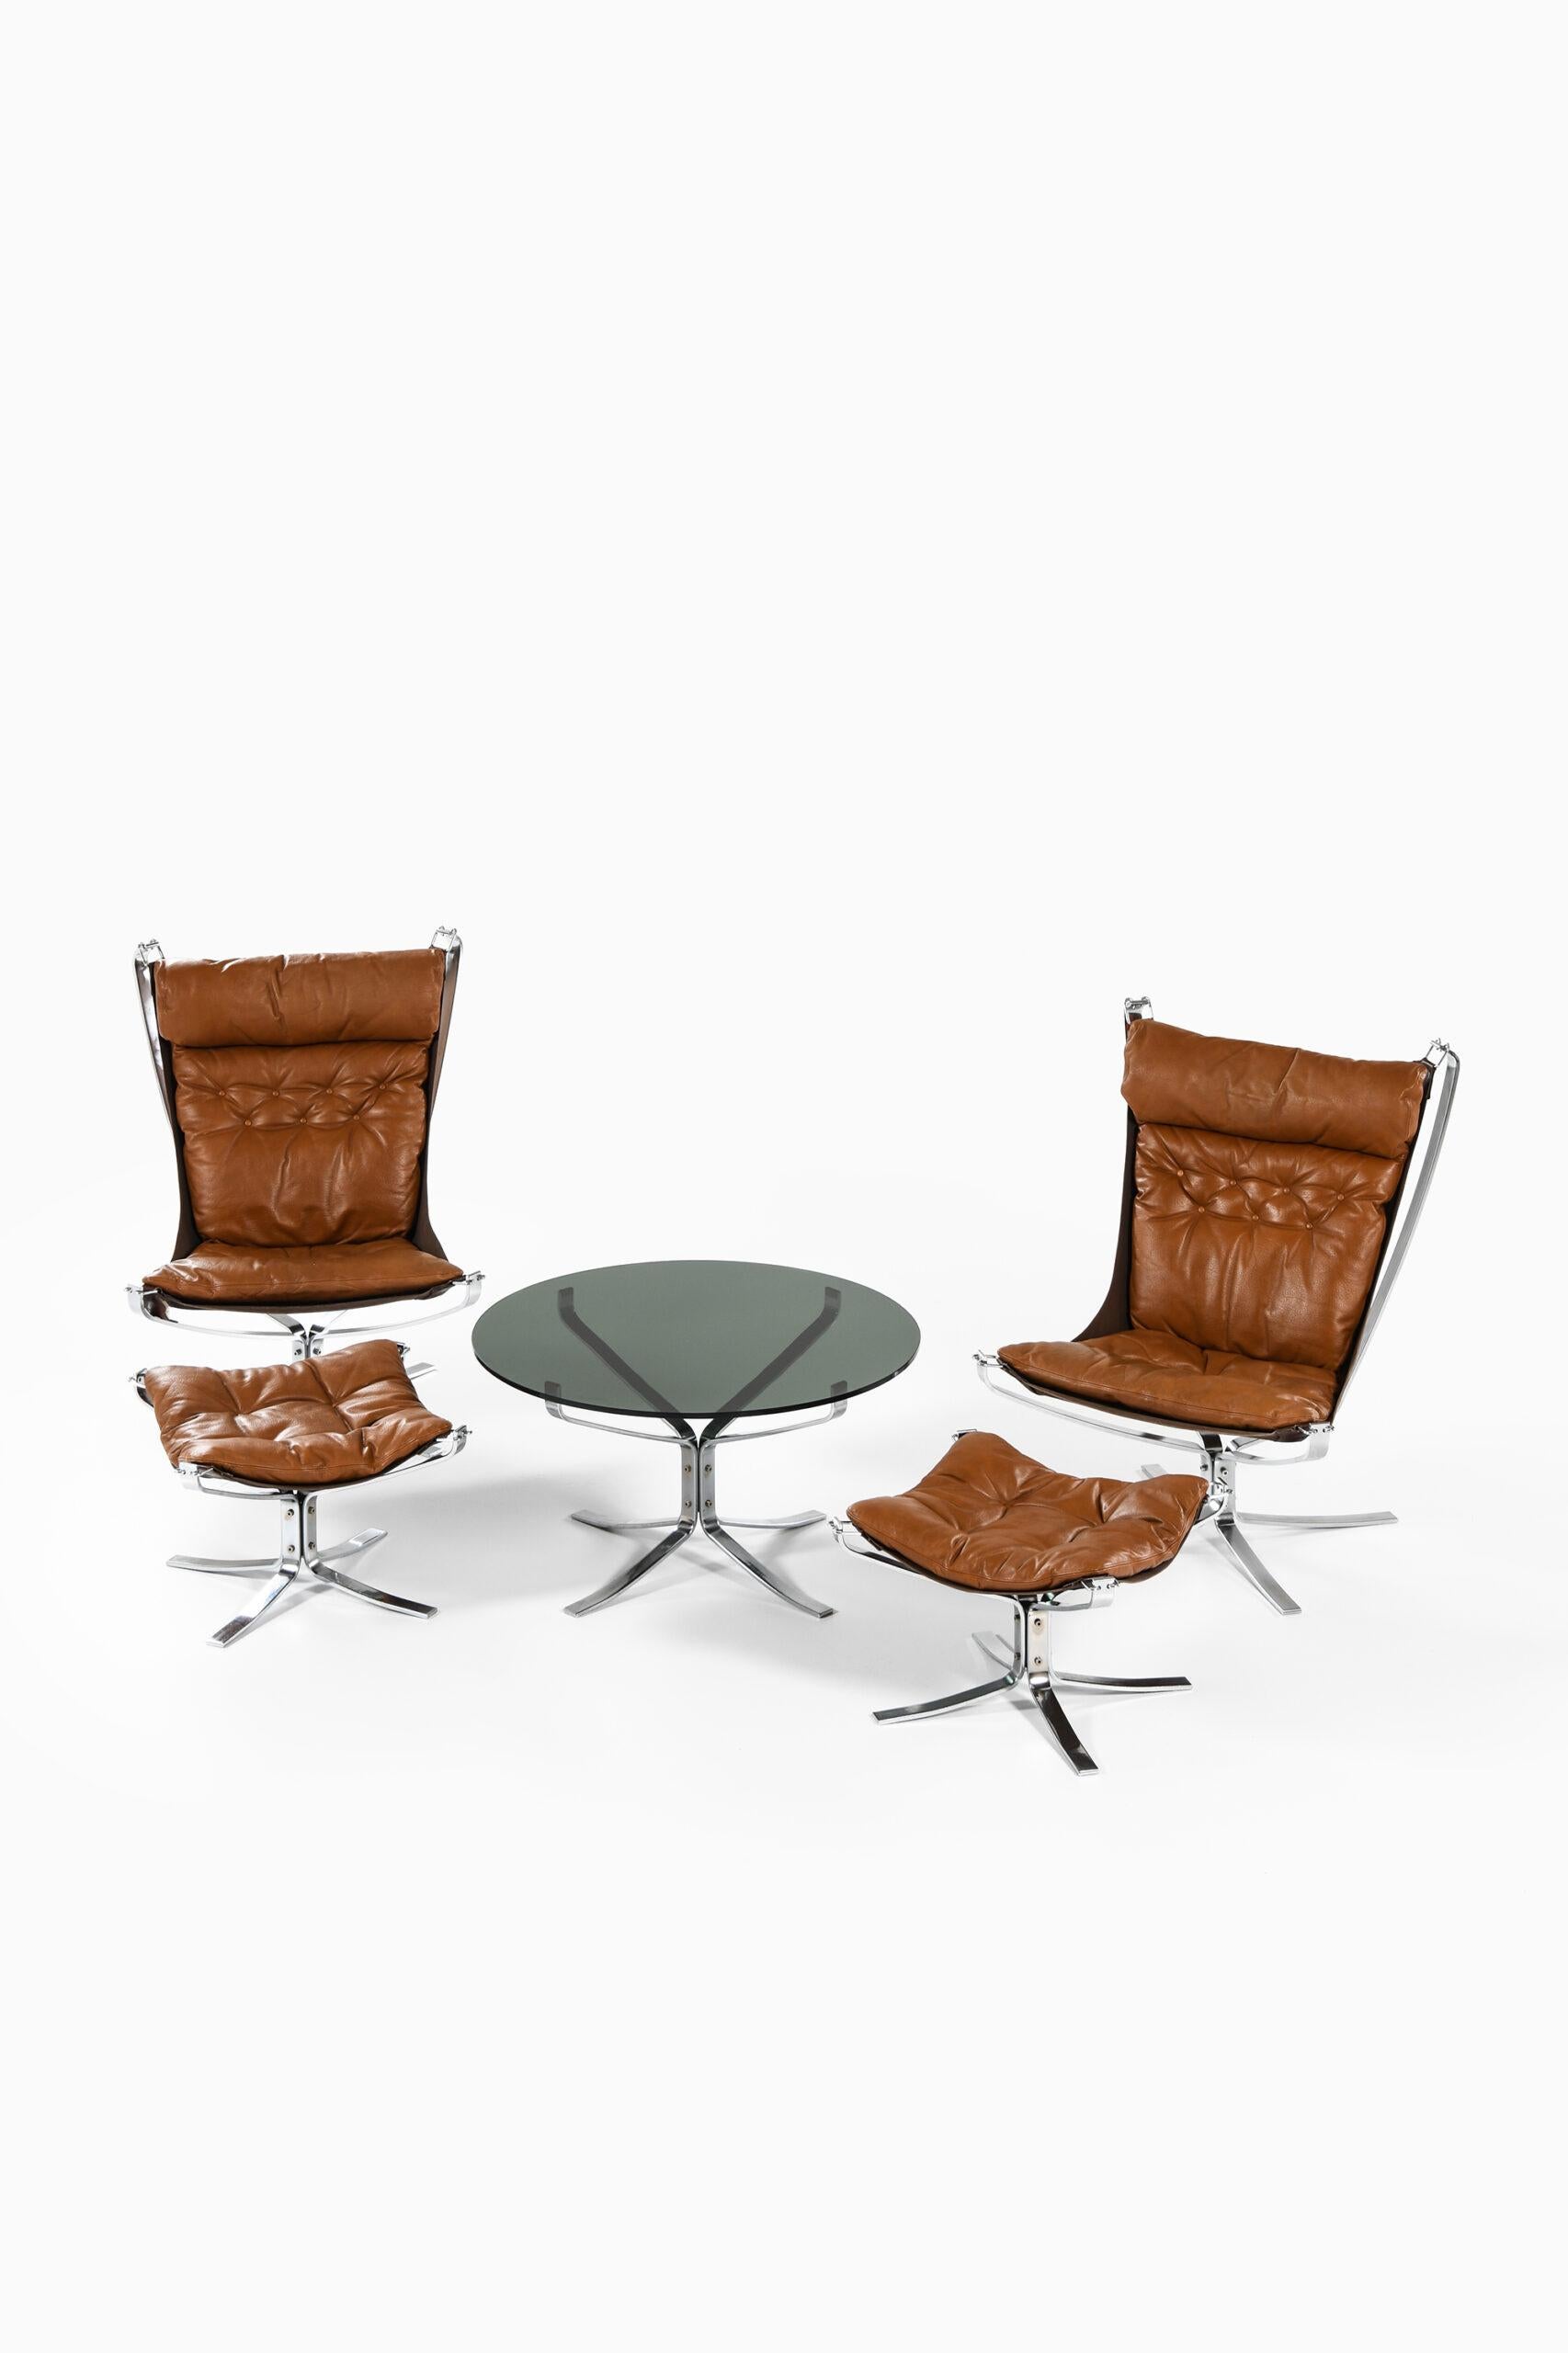 Rare ensemble de sièges composé de 2 fauteuils avec tabourets et d'une table basse modèle Falcon conçu par Sigurd Resell. Produit par Vatne Møbler en Norvège.
Dimensions de la table (L x P x H) : 90 x 90 x 48 cm.
Dimensions des chaises (L x P x H)